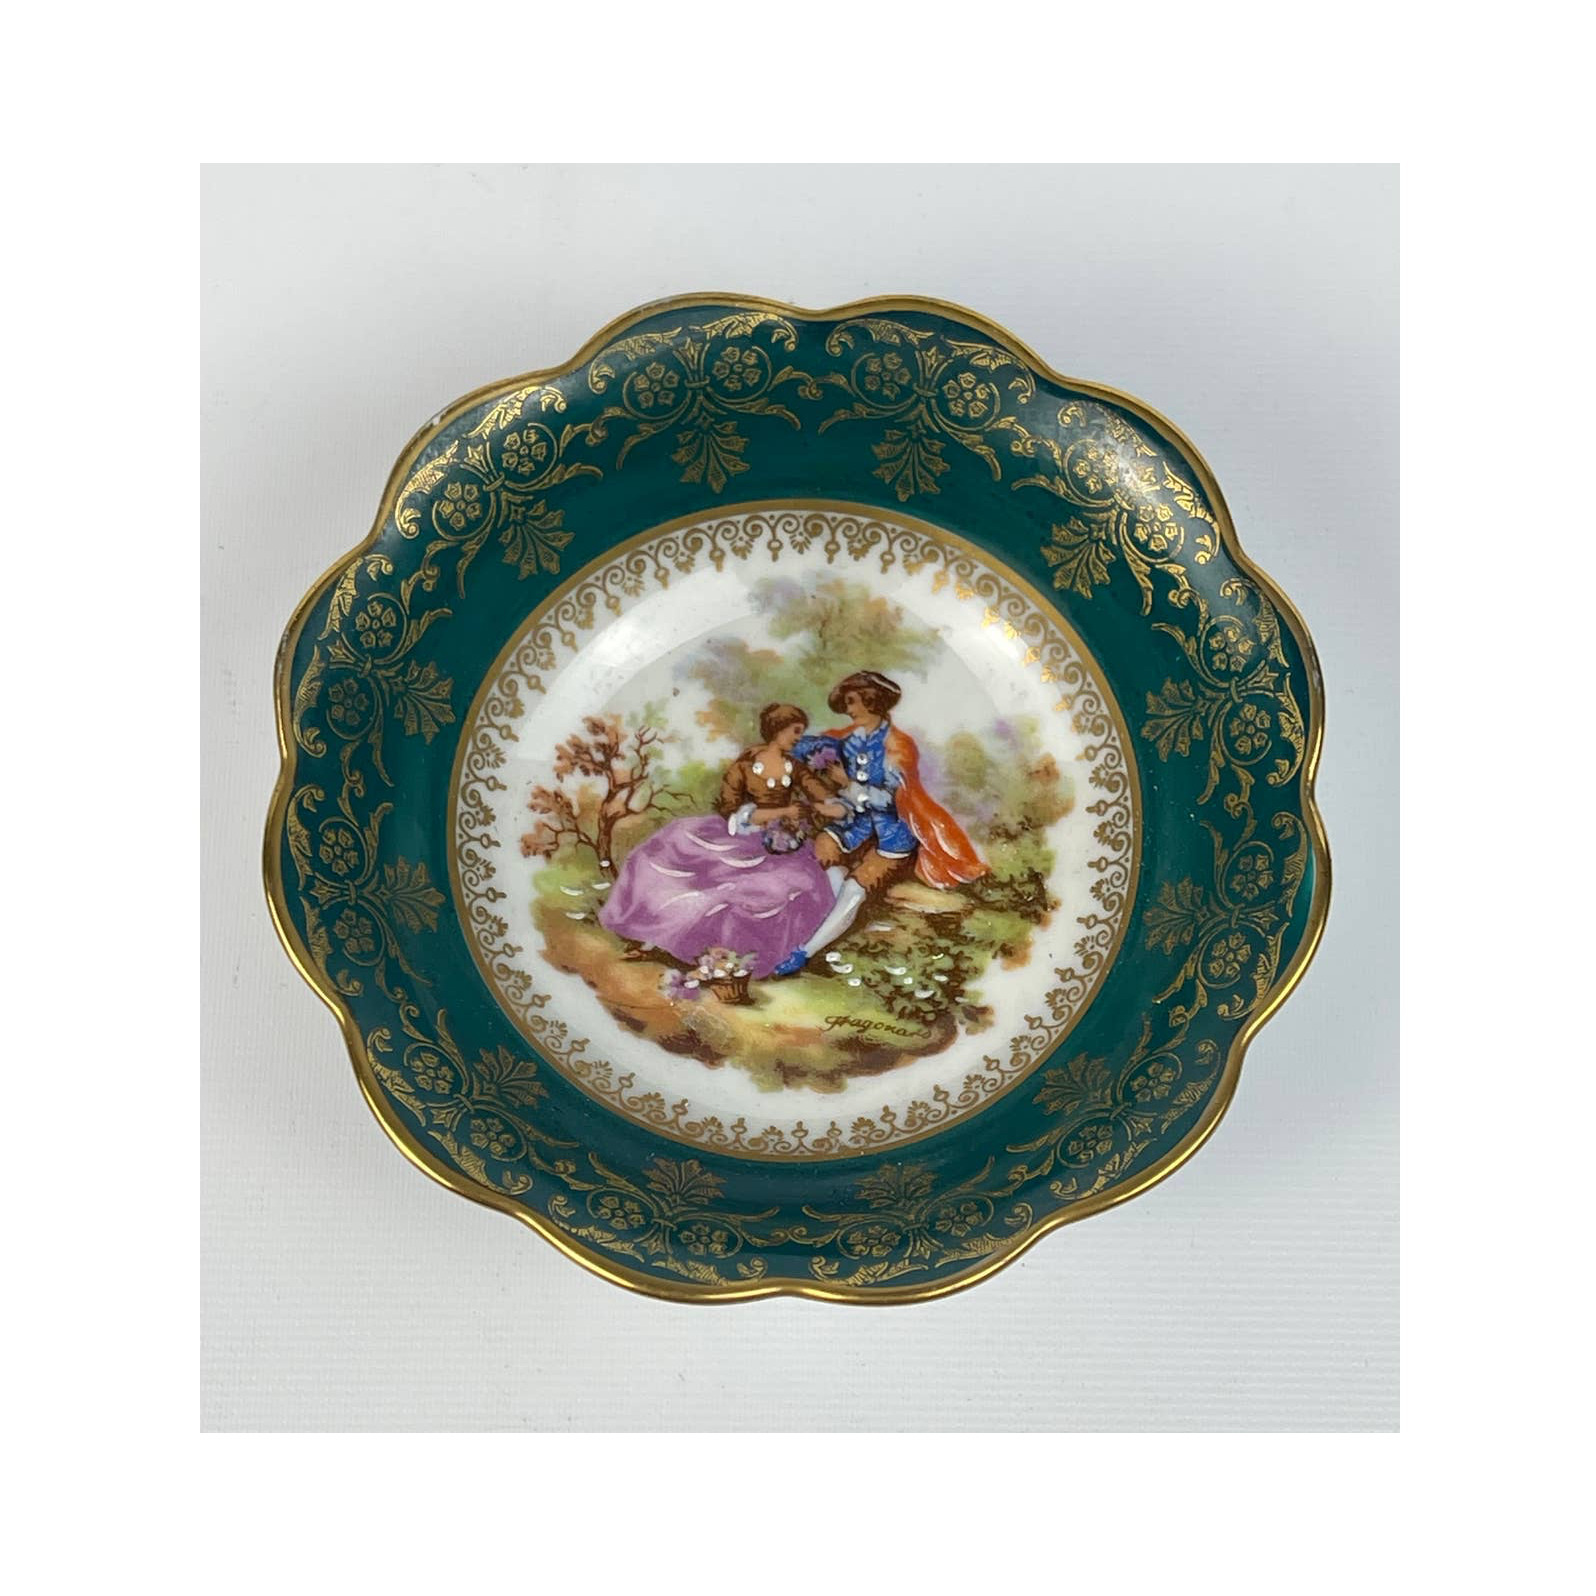 Vintage Limoges France Rehausse Main Decorative Renaissance Small Bowl / Plate